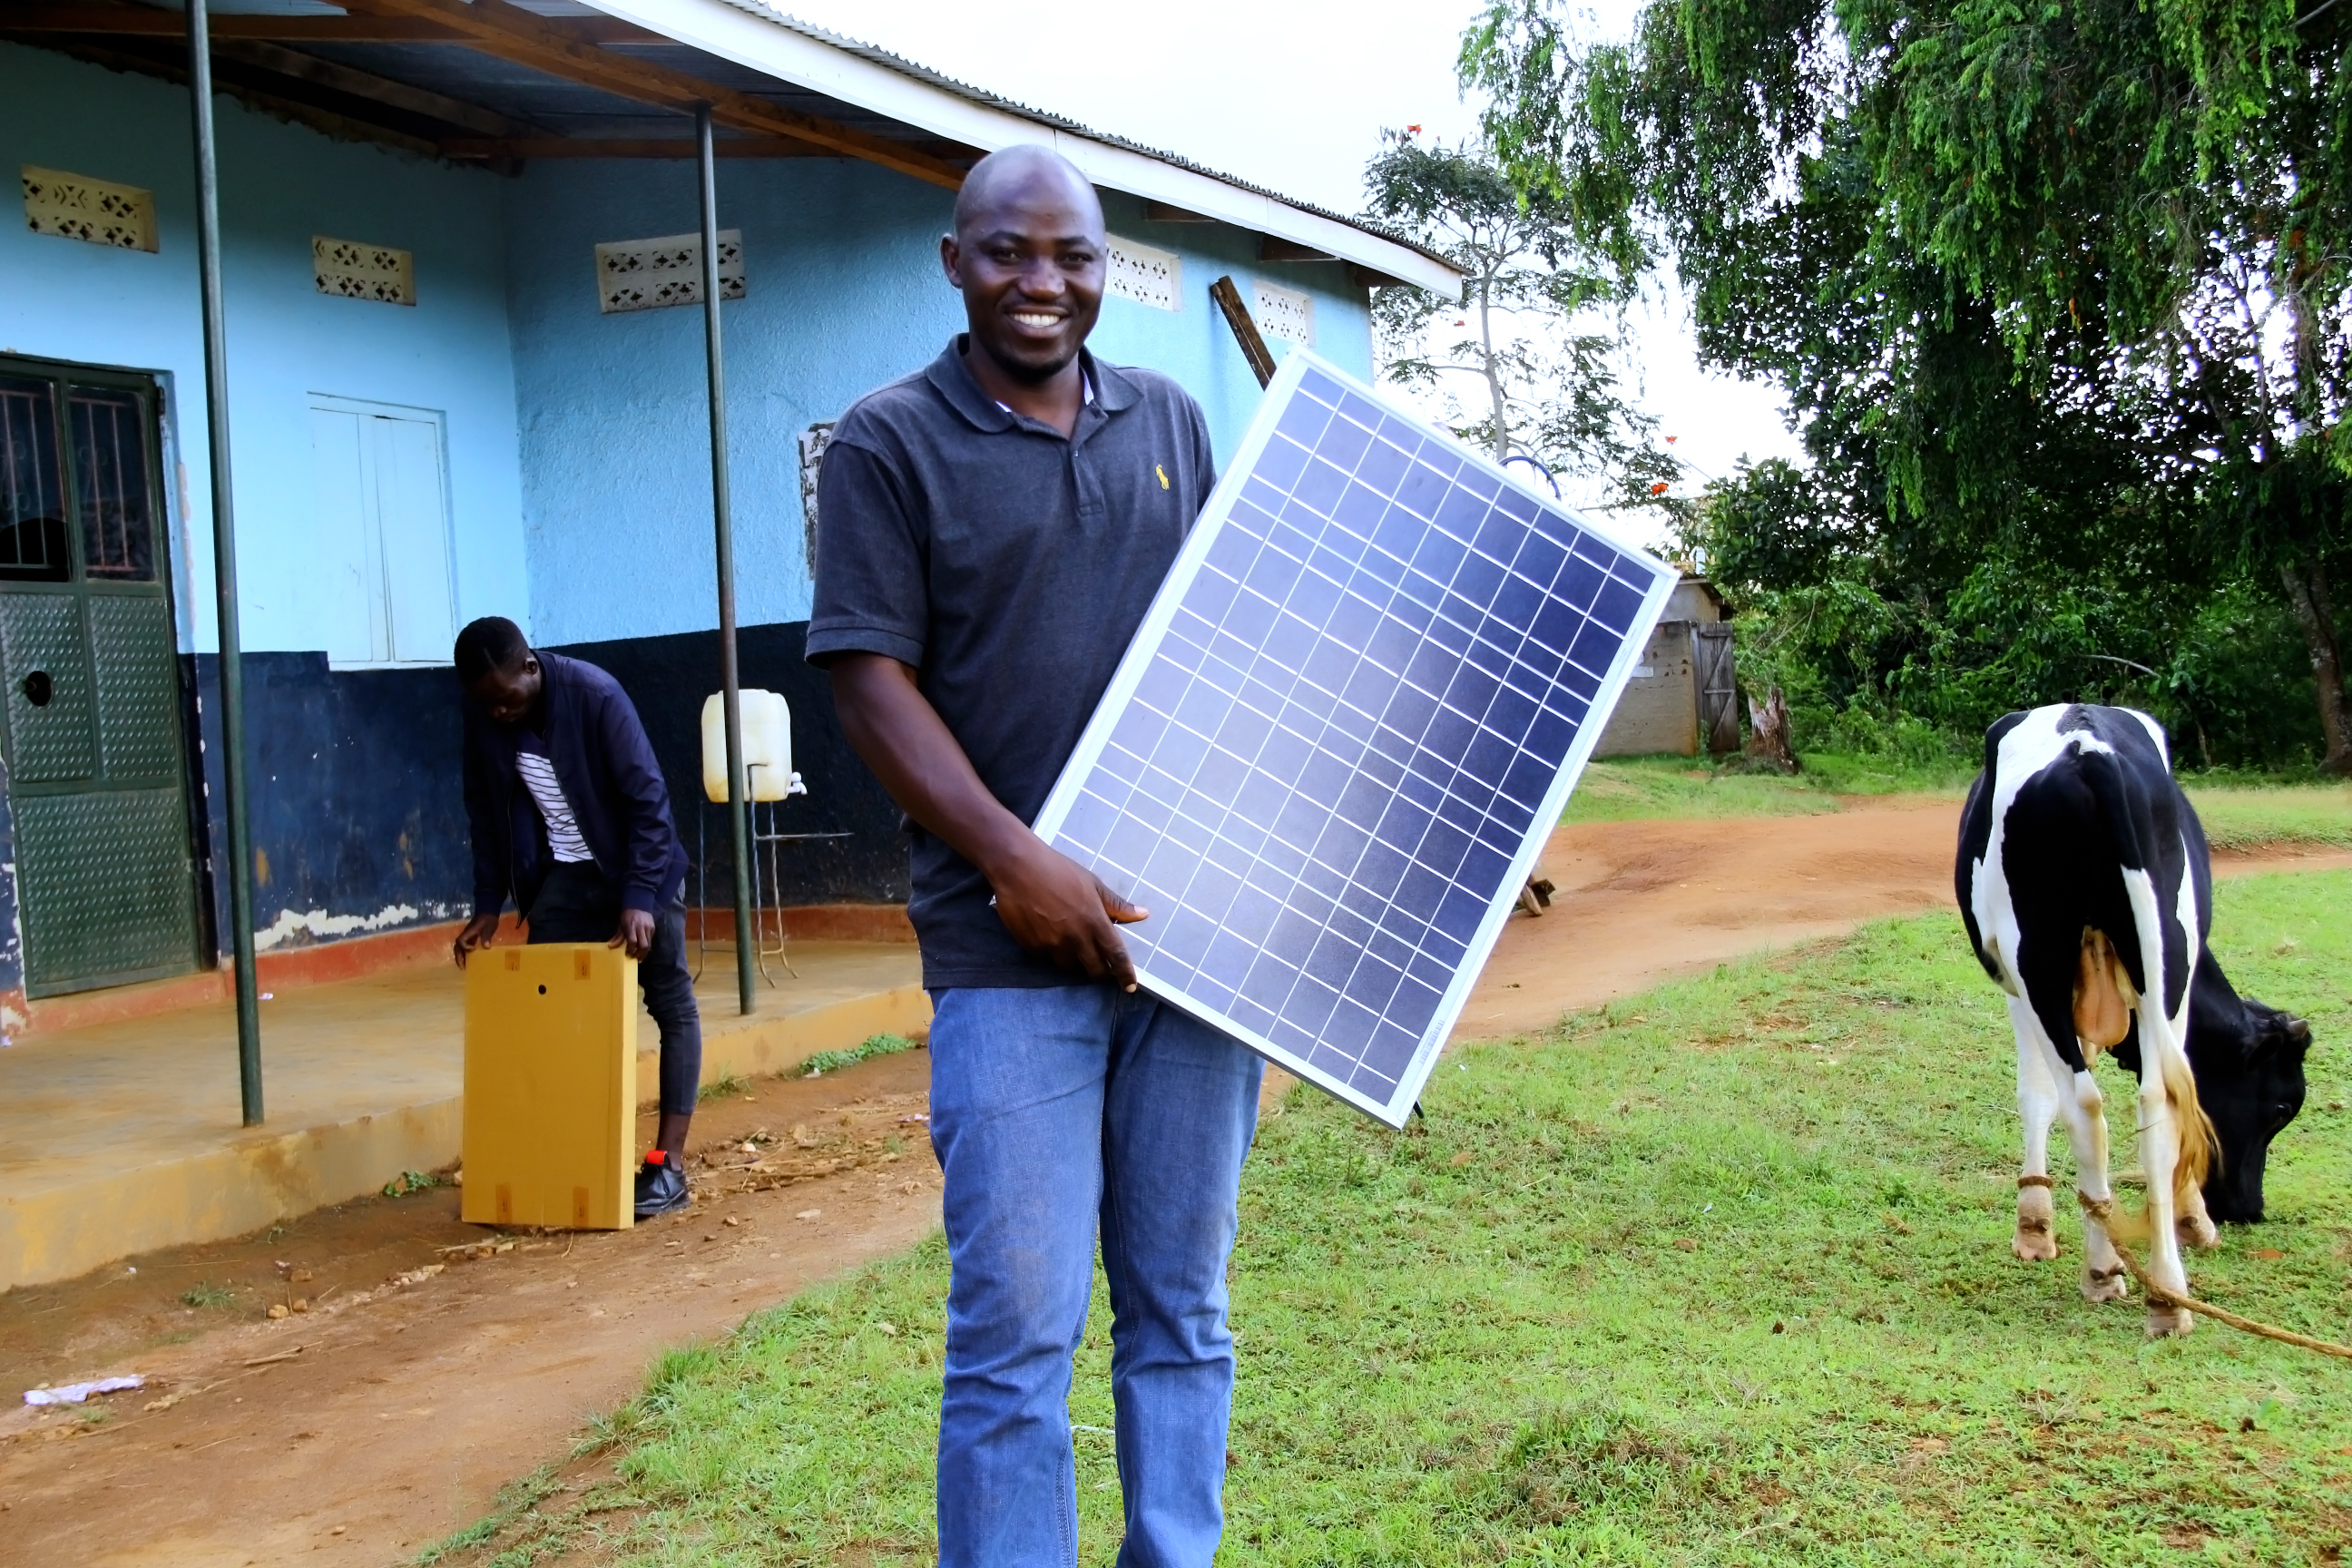 Het Tilburgse bedrijf Rural Spark ontwikkelt en verkoopt energierouters die werken op zonne-energie in Afrika